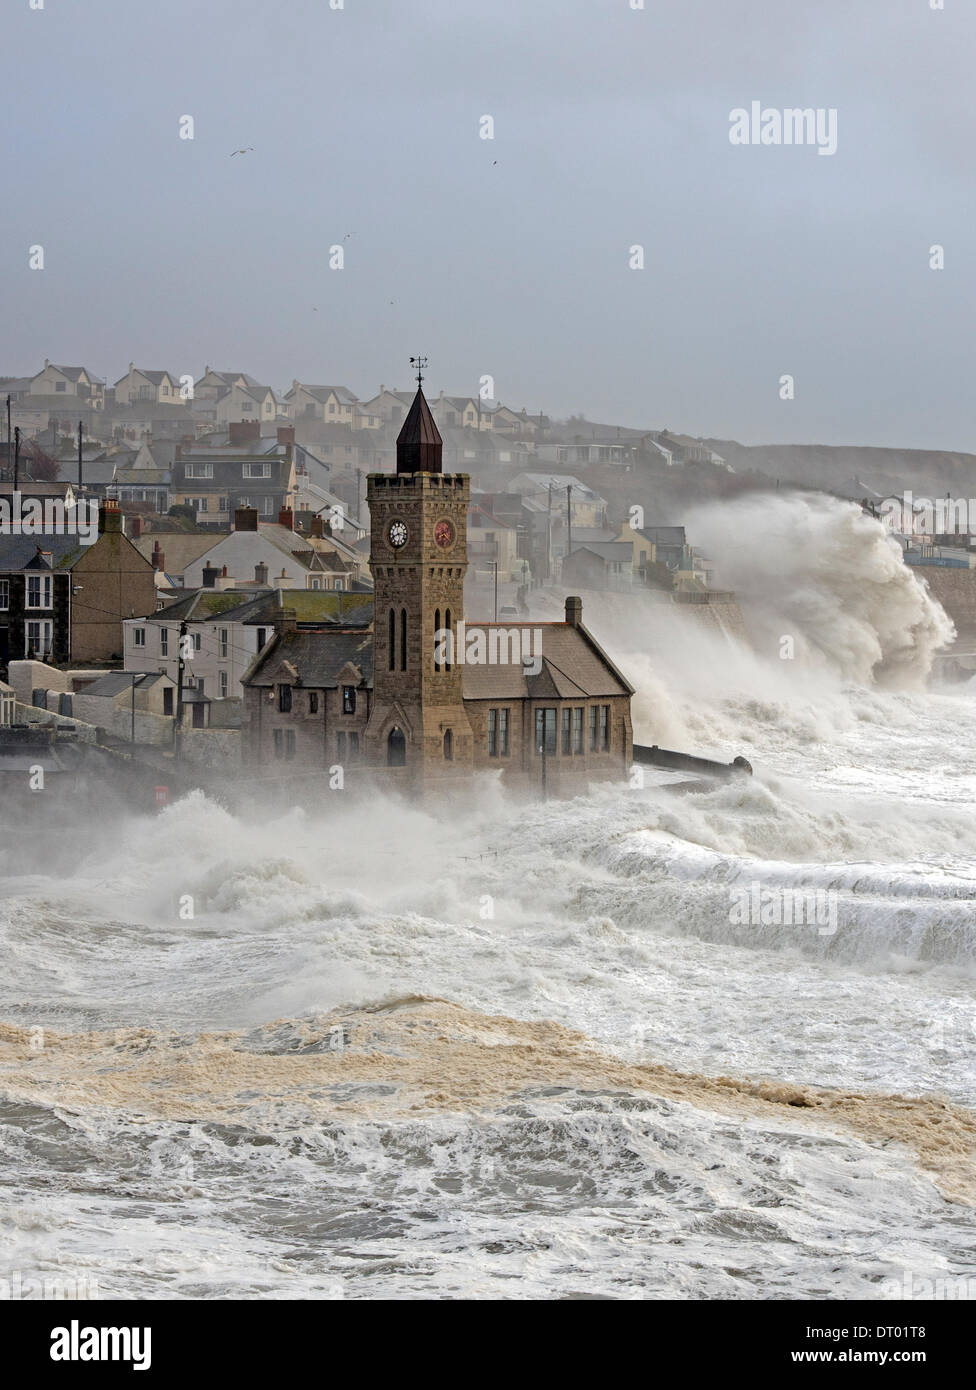 Sturm erzeugen riesige Wellen, die in Porthleven, verursacht viel Schaden an den Hafen, Strukturen und sinkende Schiffe zu zerschlagen Stockfoto